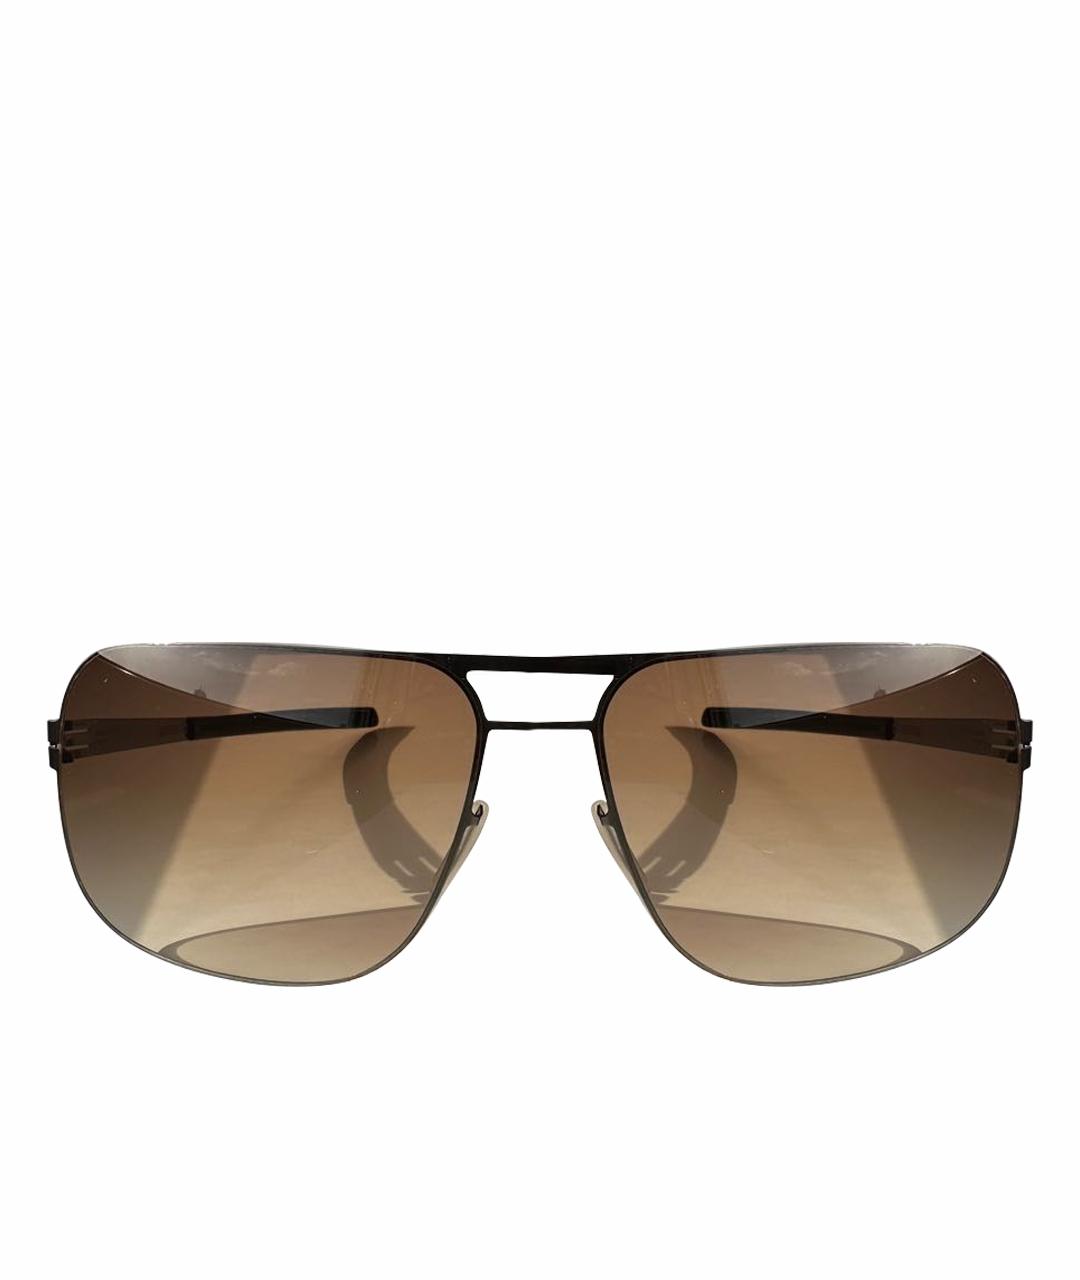 ICBERLIN Коричневые металлические солнцезащитные очки, фото 1